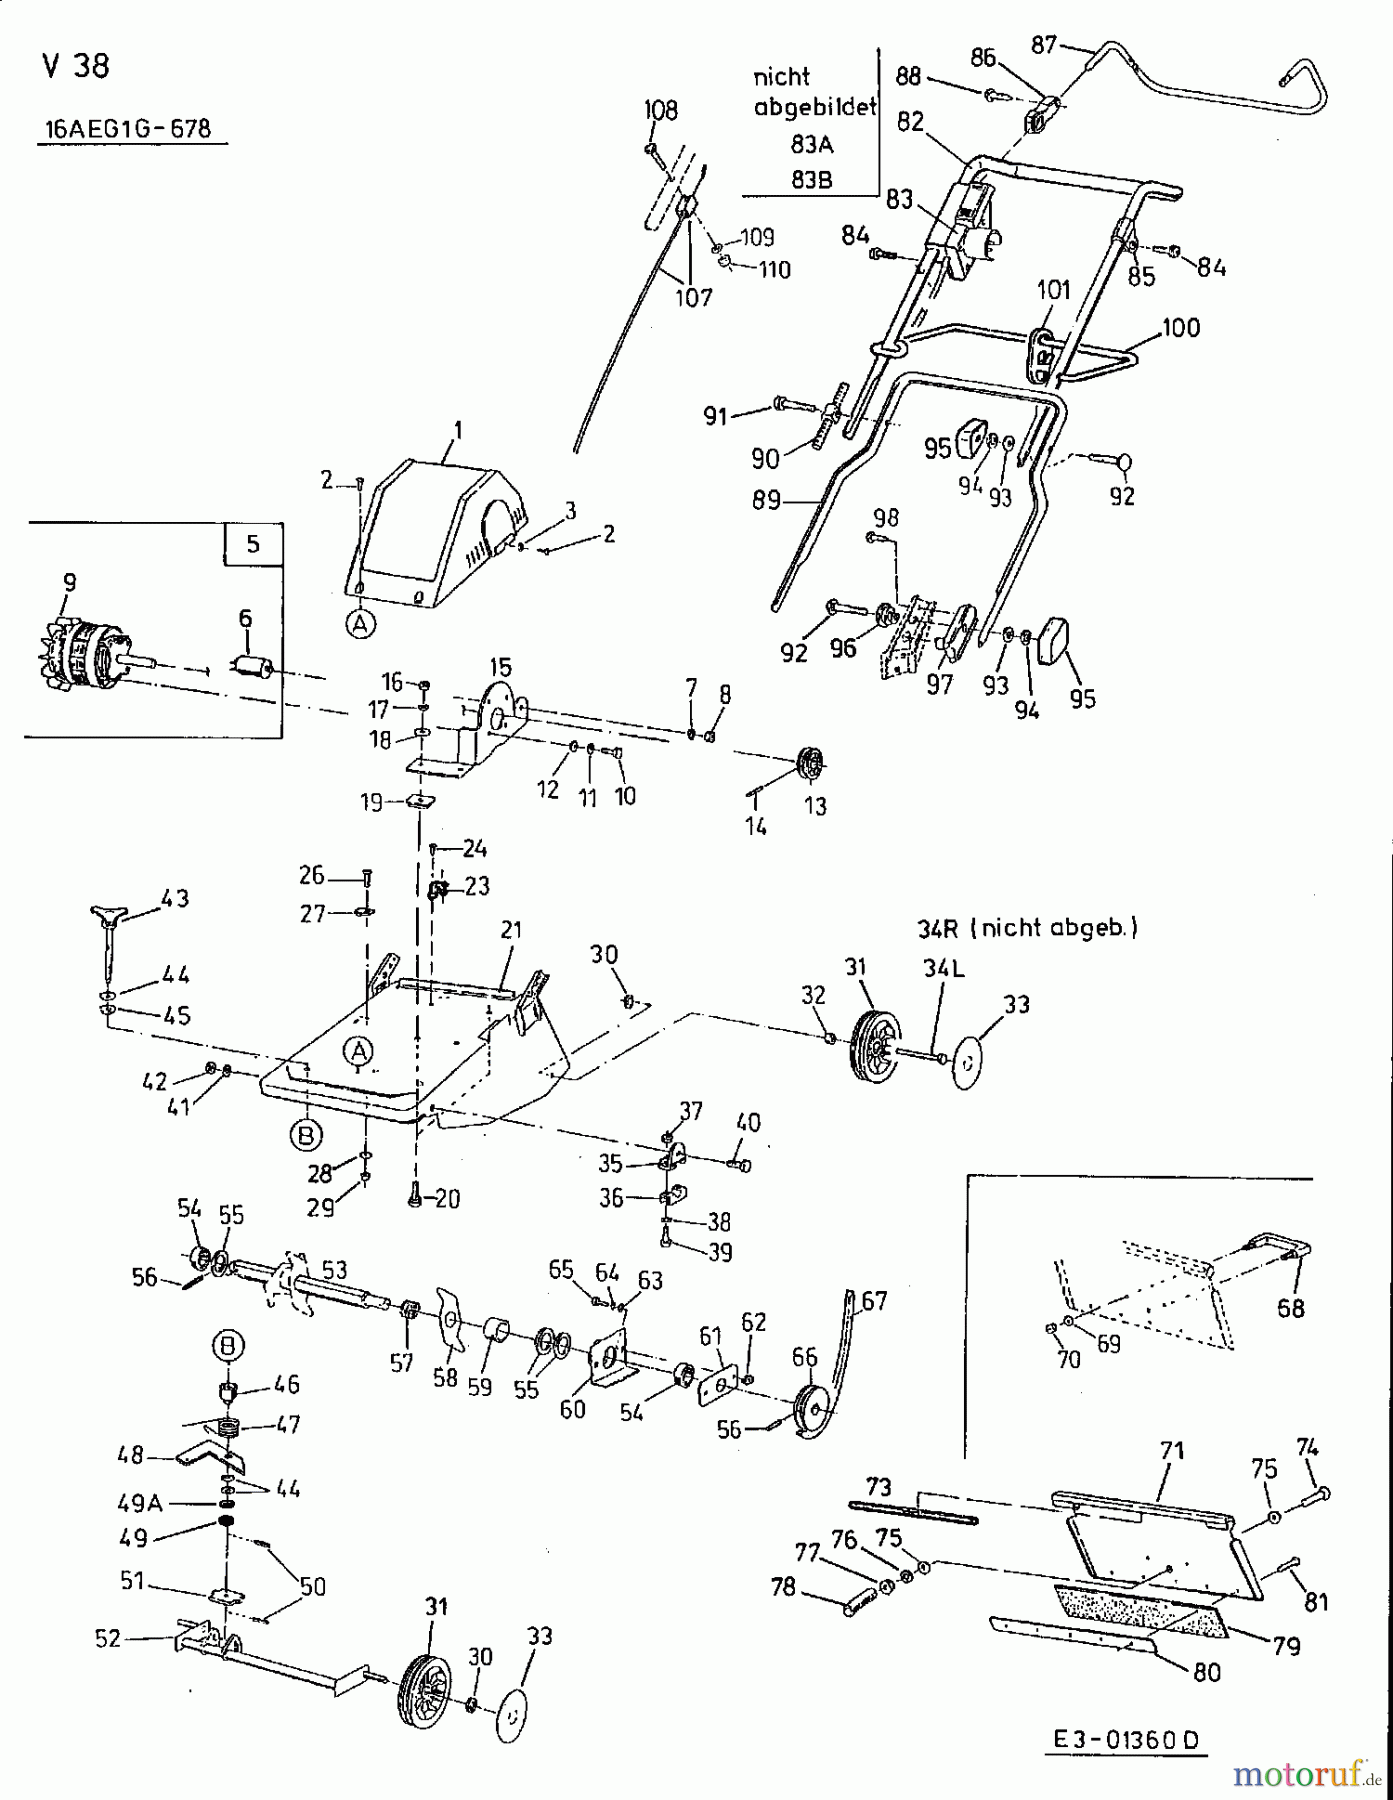  MTD Scarificateur électrique V 38 16AEG1G-678  (2002) Machine de base